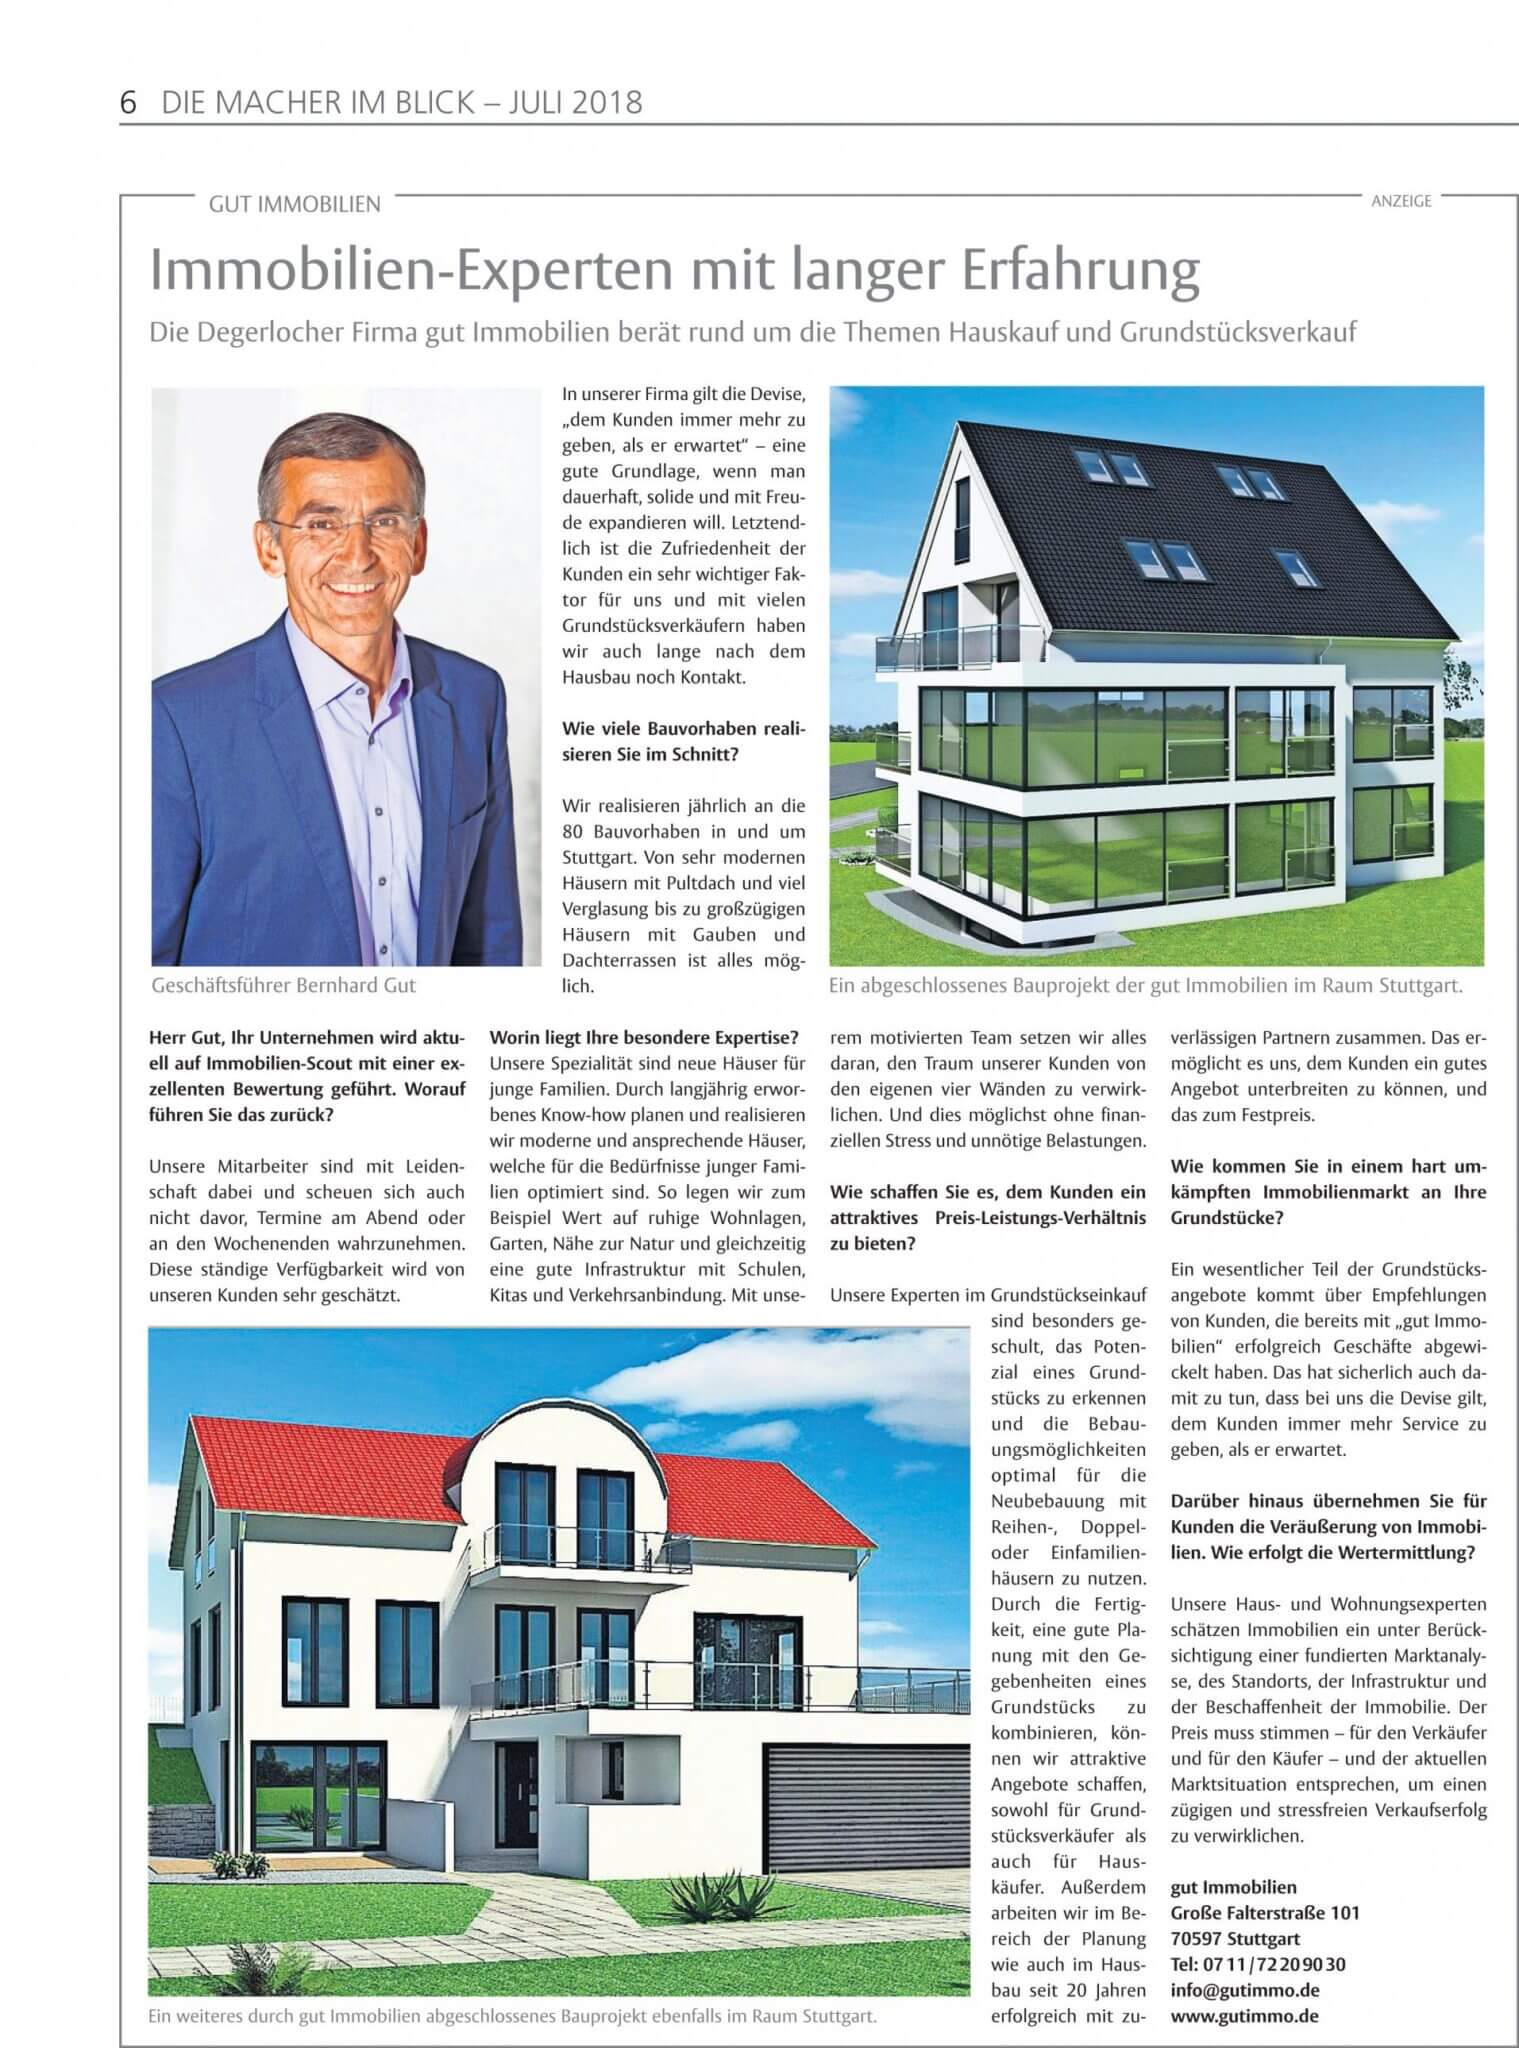 Artikel der Stuttgarter Zeitung über gut Immobilien